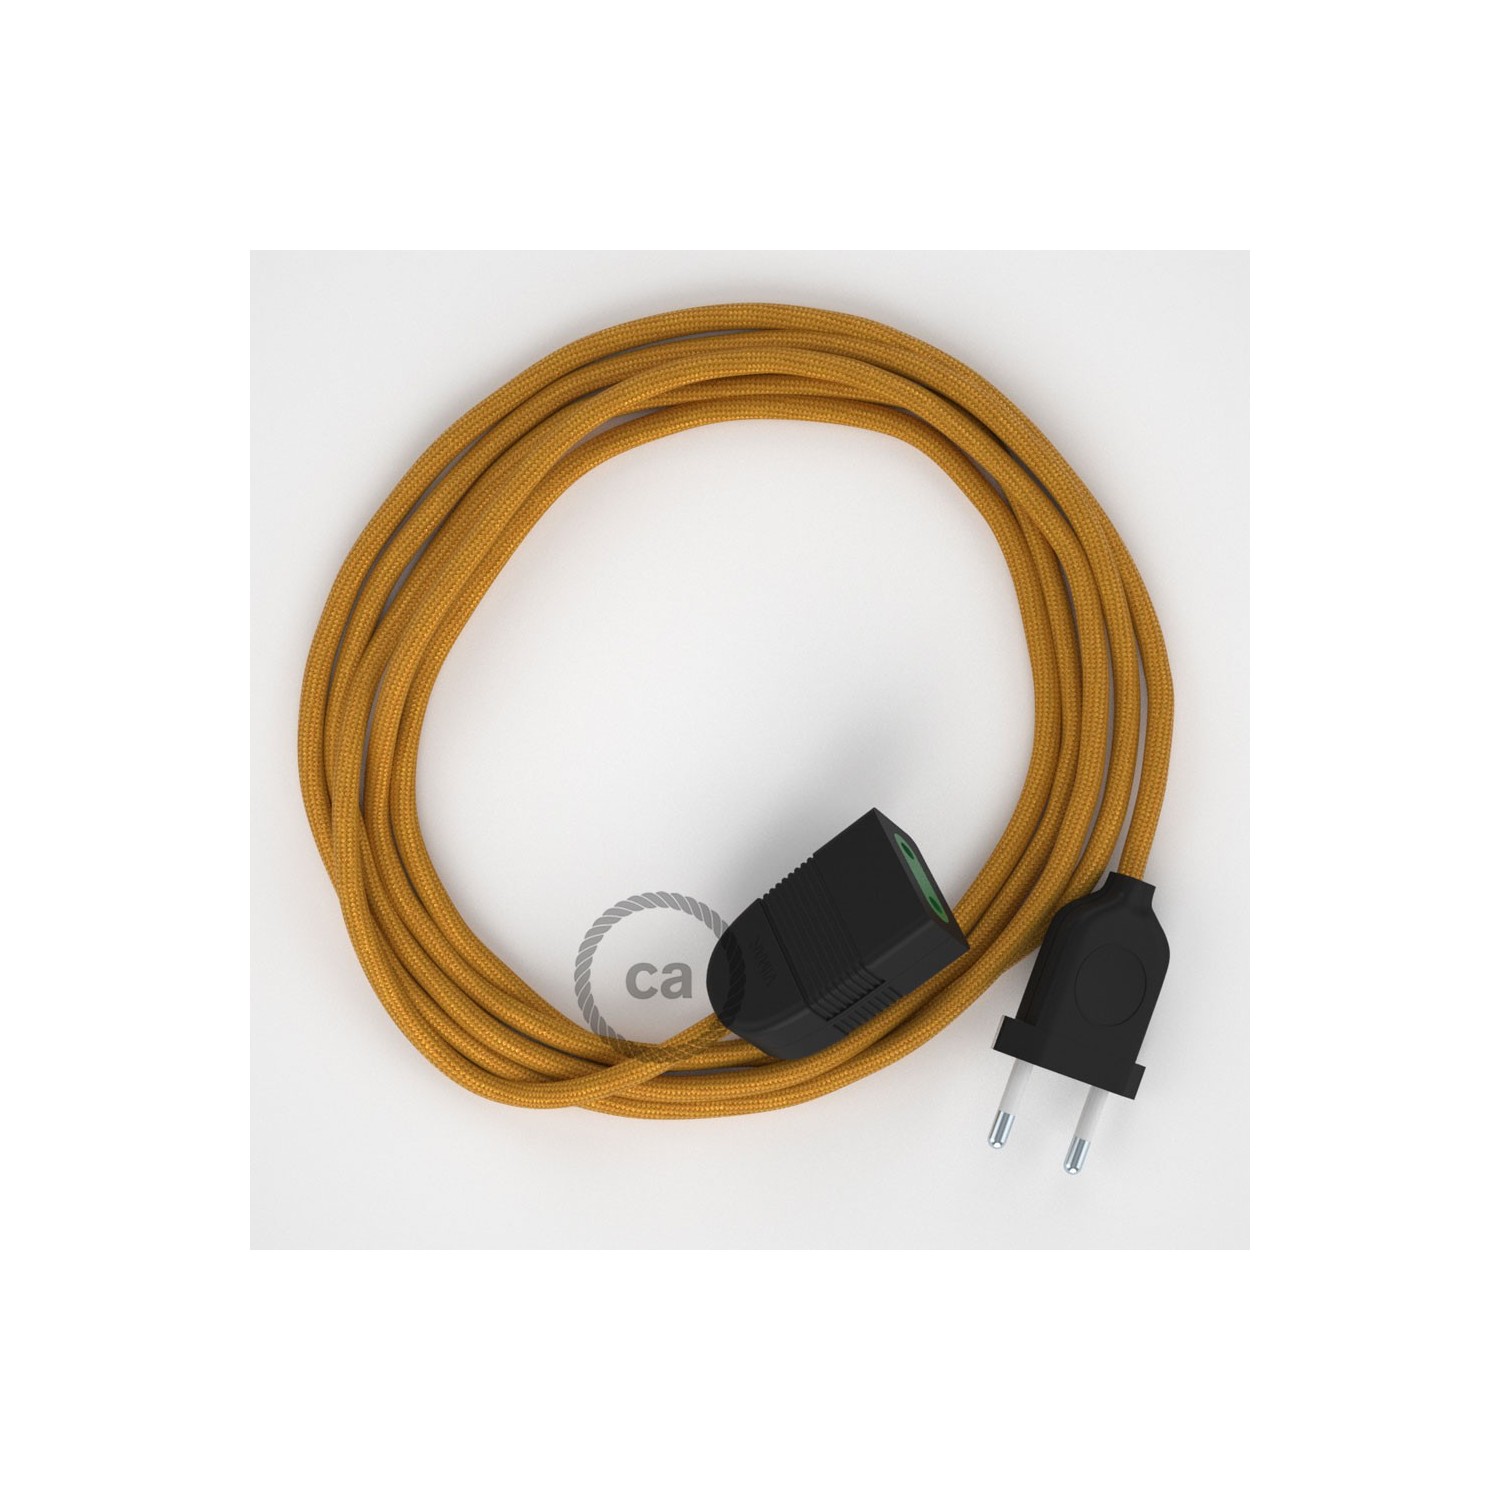 Rallonge électrique avec câble textile RM05 Effet Soie Doré 2P 10A Made in Italy.